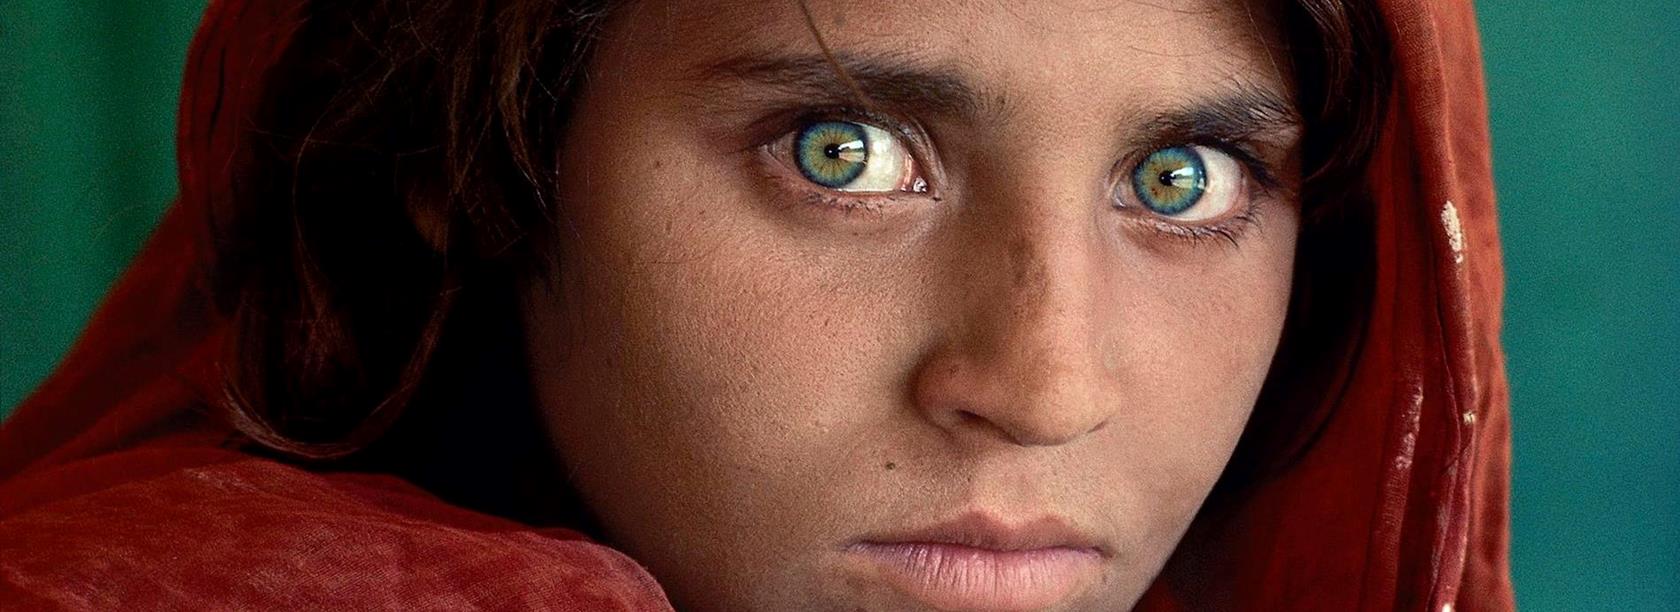 سفر به جزایر لانگر هانس - درباره معروف ترین دختر افغان